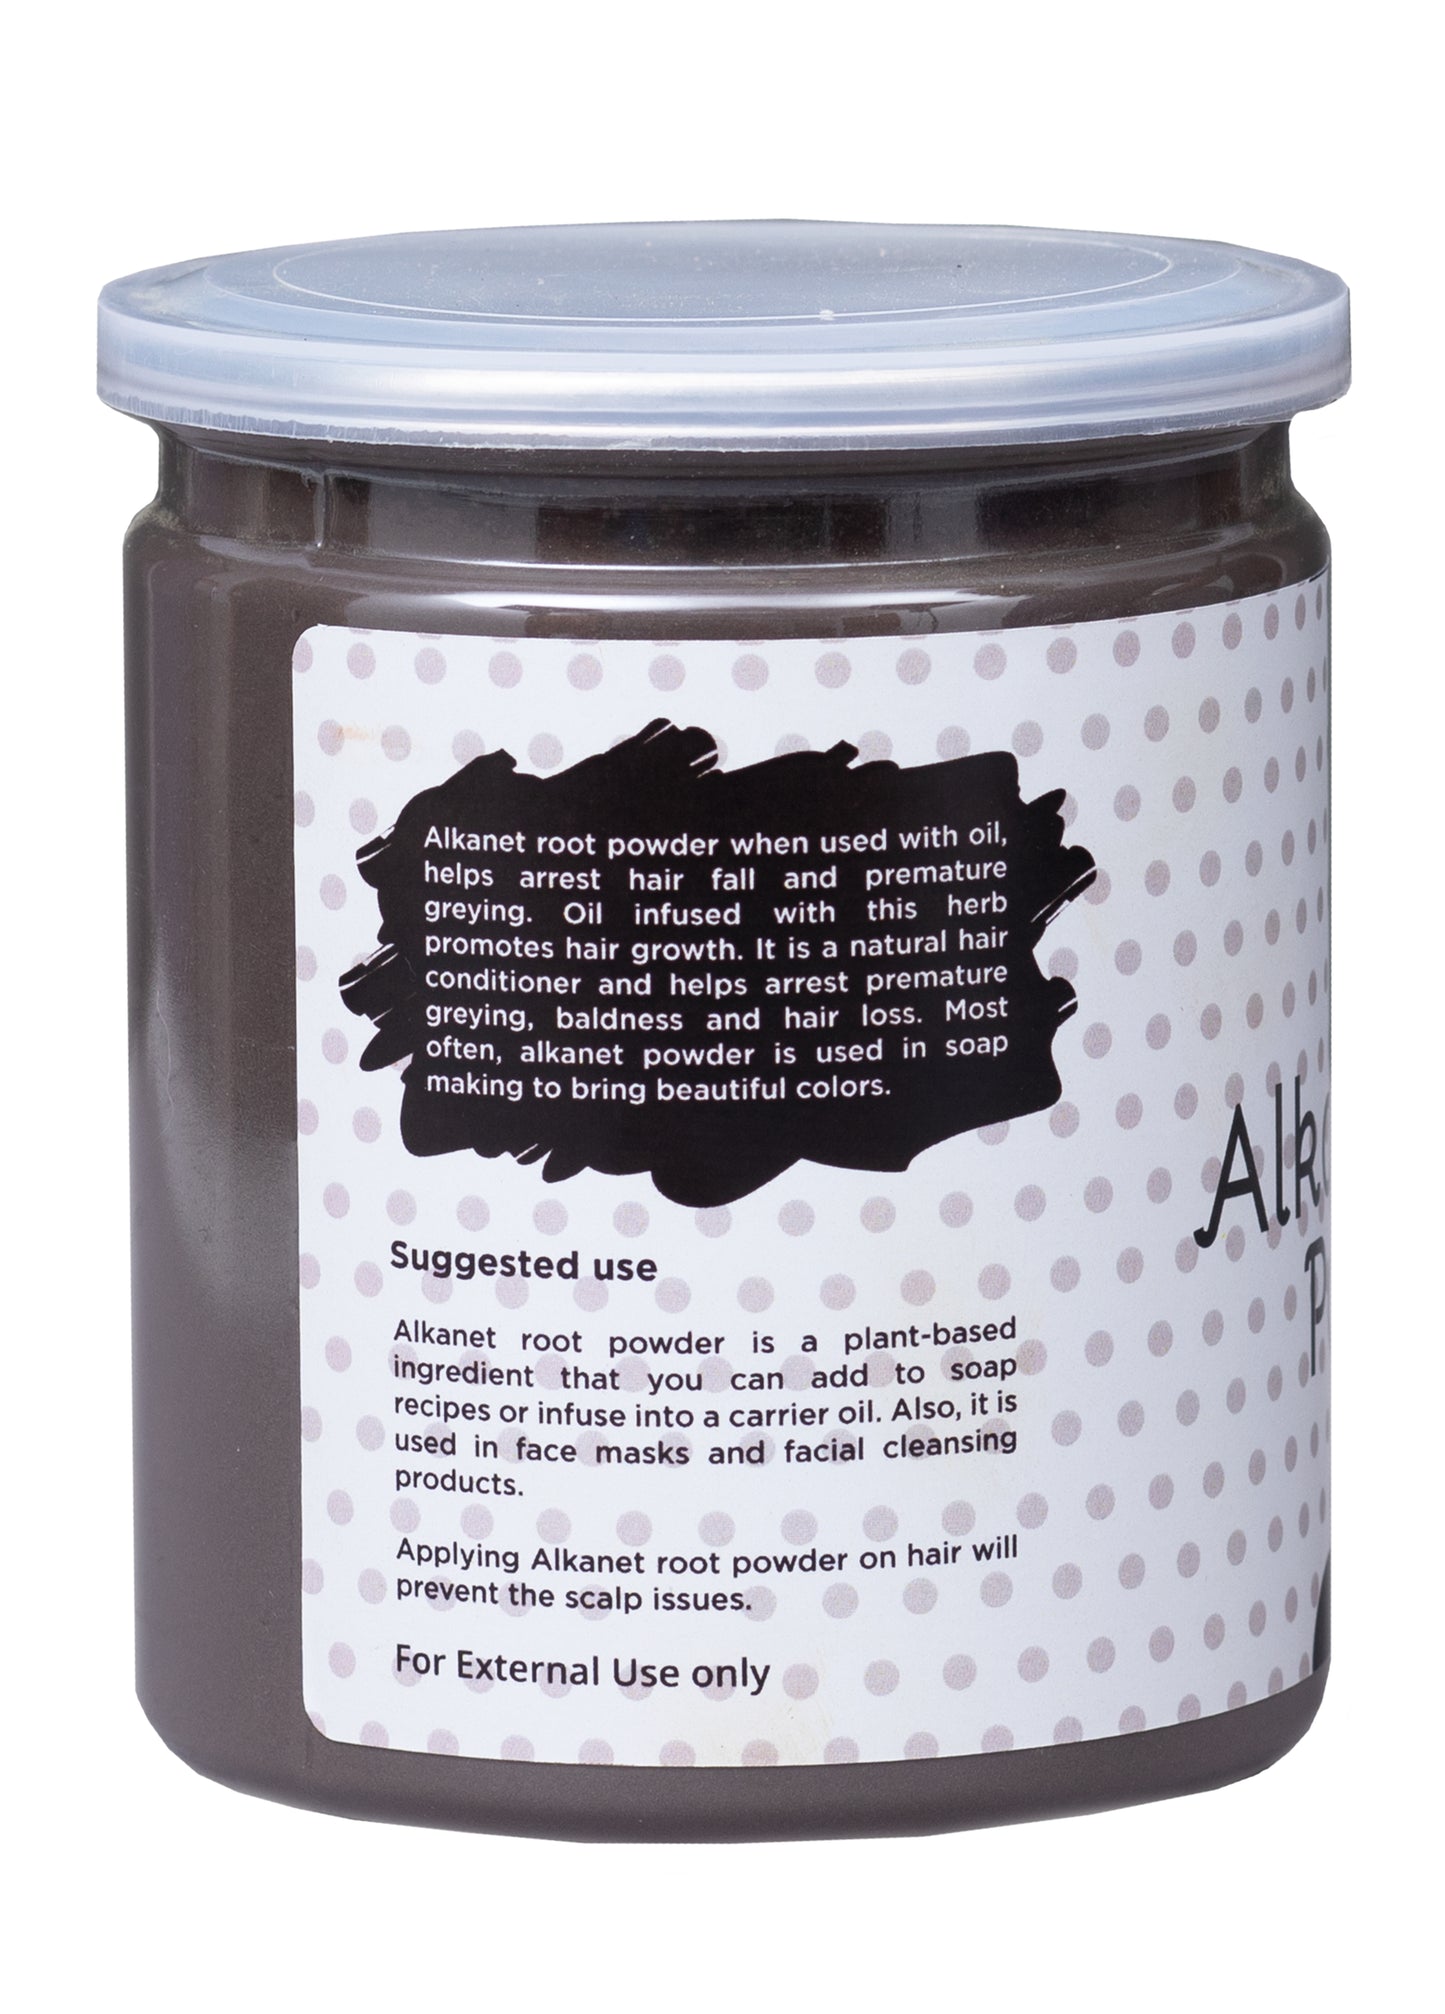 Alkanet Root Powder 10oz | 100% Natural Colourant For Soap making | Makes Beautiful Color Shades | Ratanjot Root Powder | Yogis's Gift®